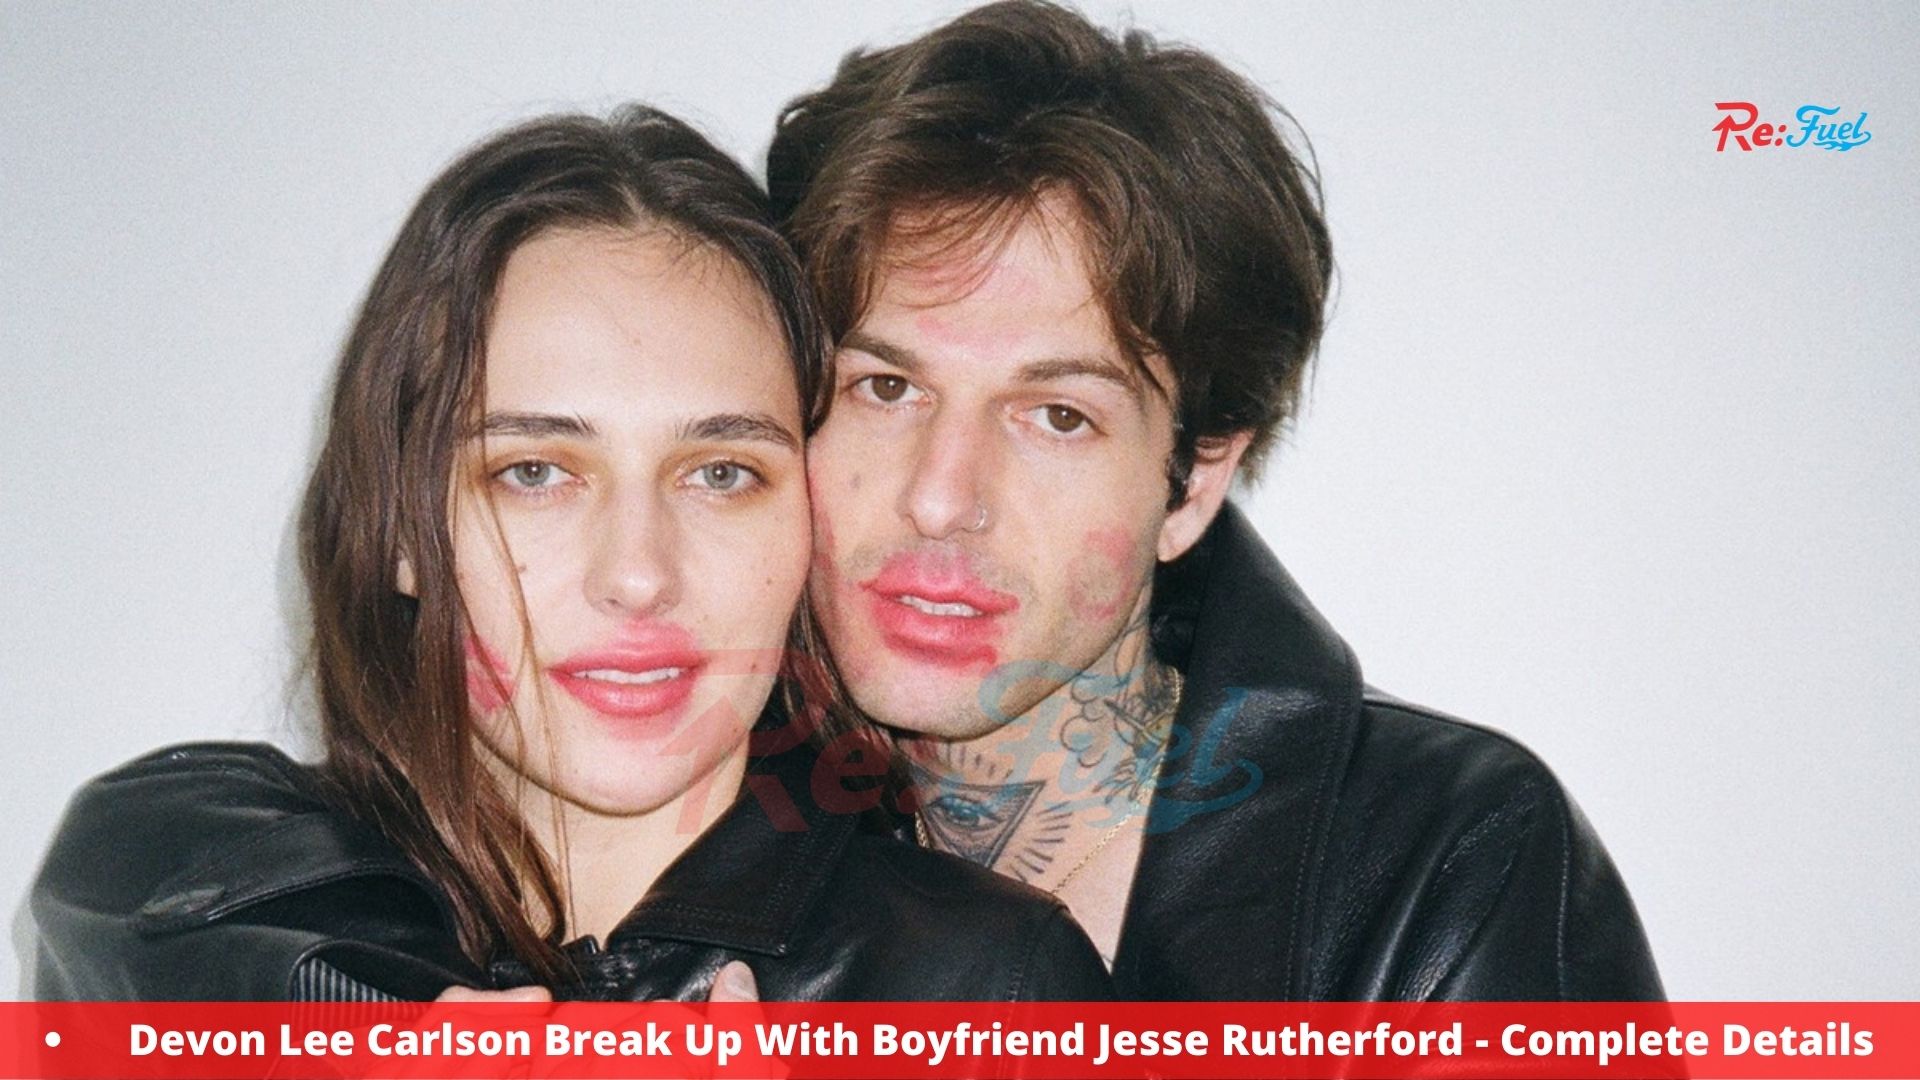 Devon Lee Carlson Break Up With Boyfriend Jesse Rutherford - Complete Details